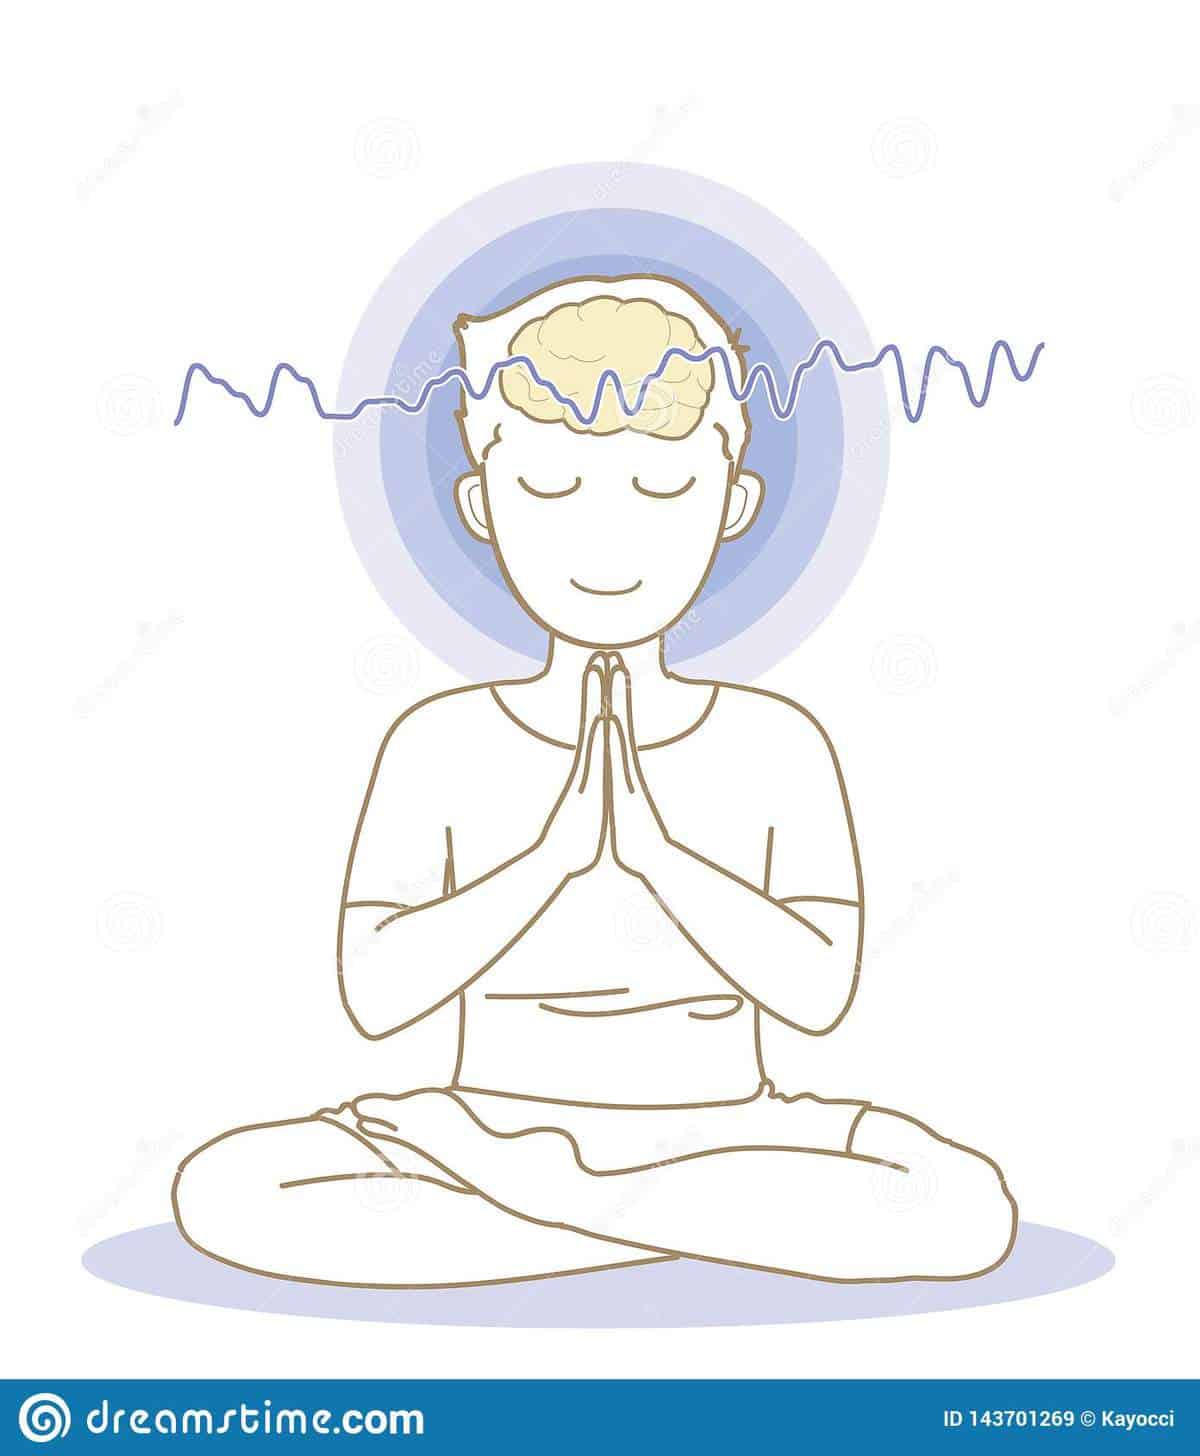 Kurz Meditace pro začátečníky i pokročilé (od A do Z)